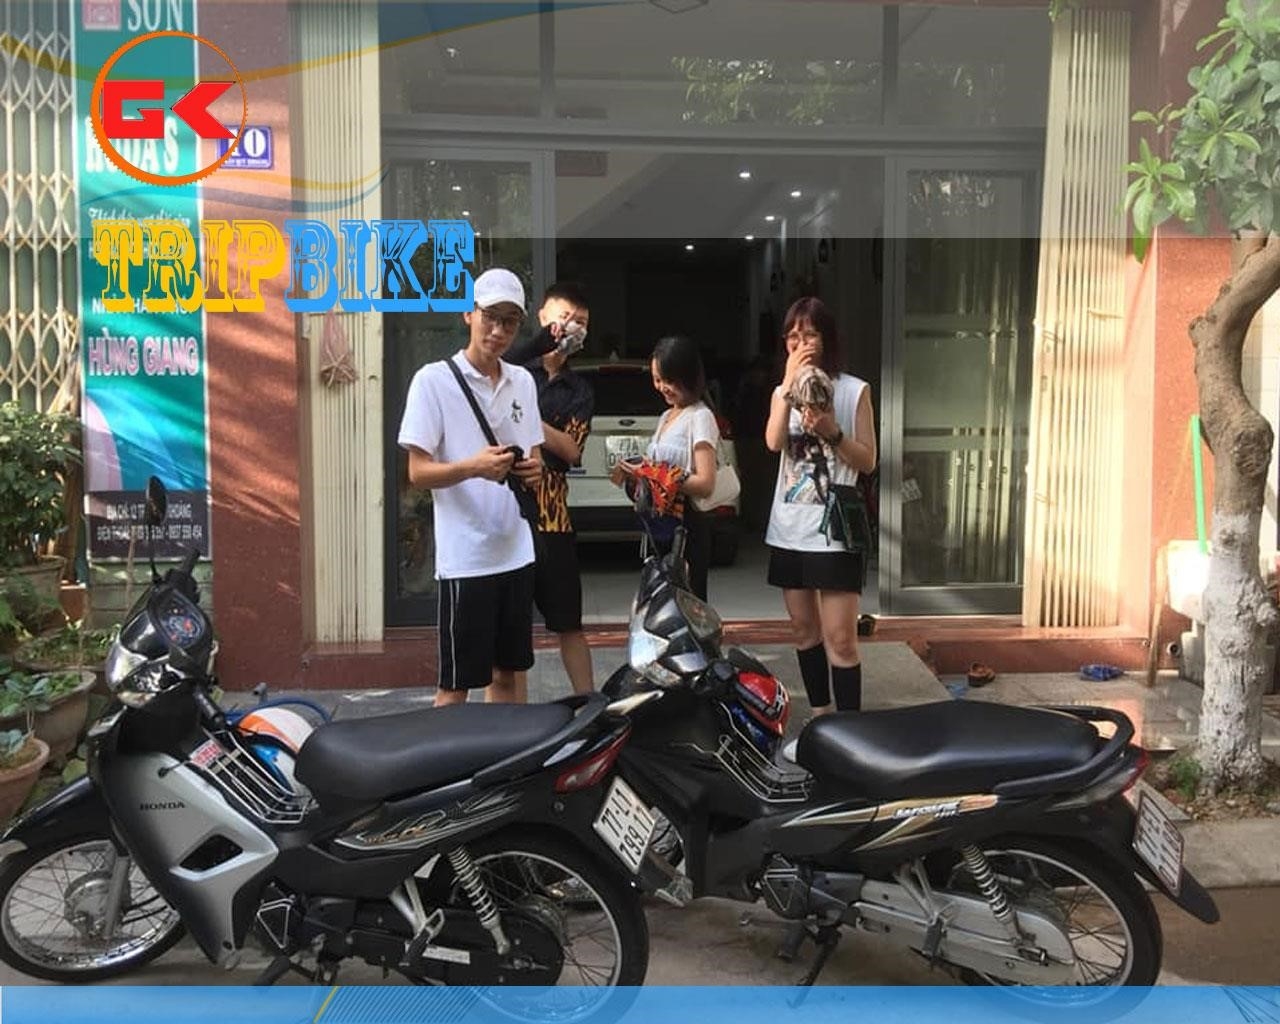 Xuan Tinh Quy Nhon motorcycle rentals.